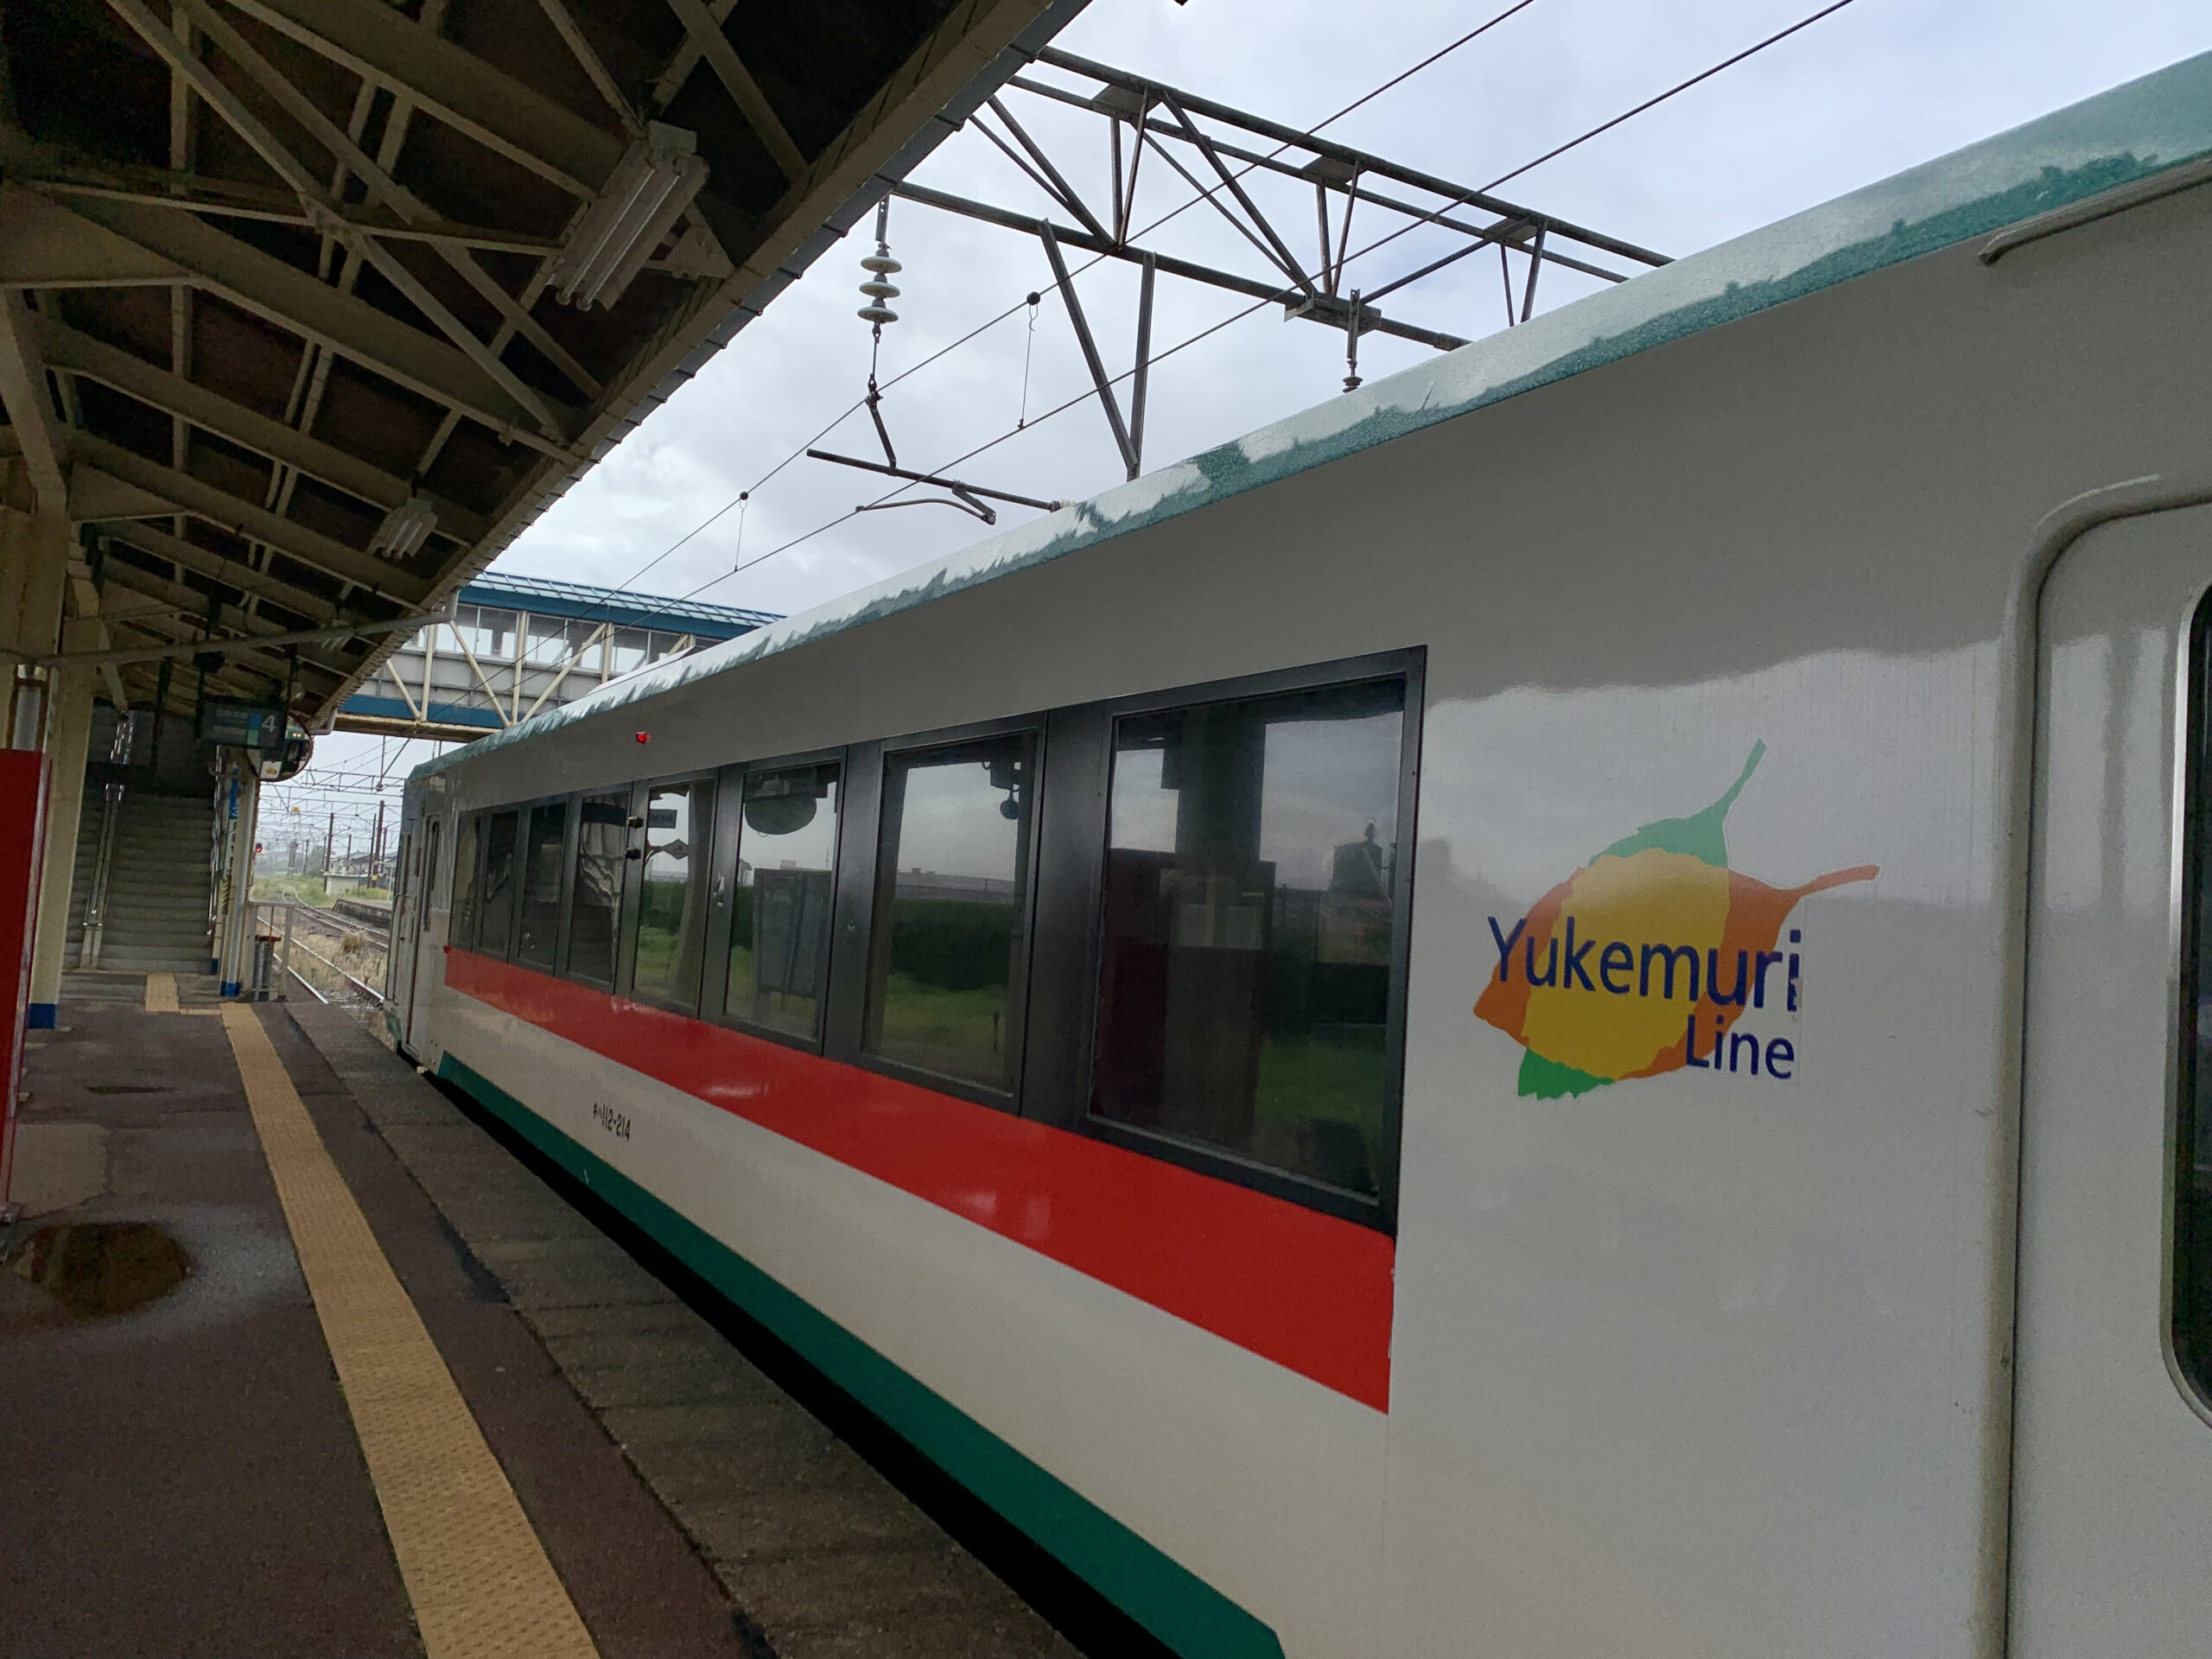 秋田県の内陸側から入る電車ルート。山形県から秋田県への横断方法について。